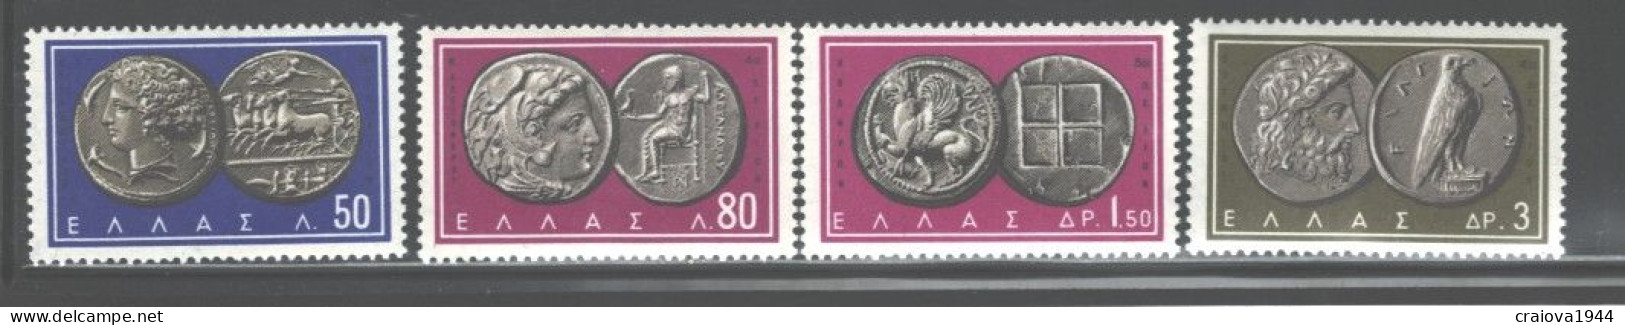 GREECE 1964 ANTIQUE COINS #750 - 758 MNH - Neufs